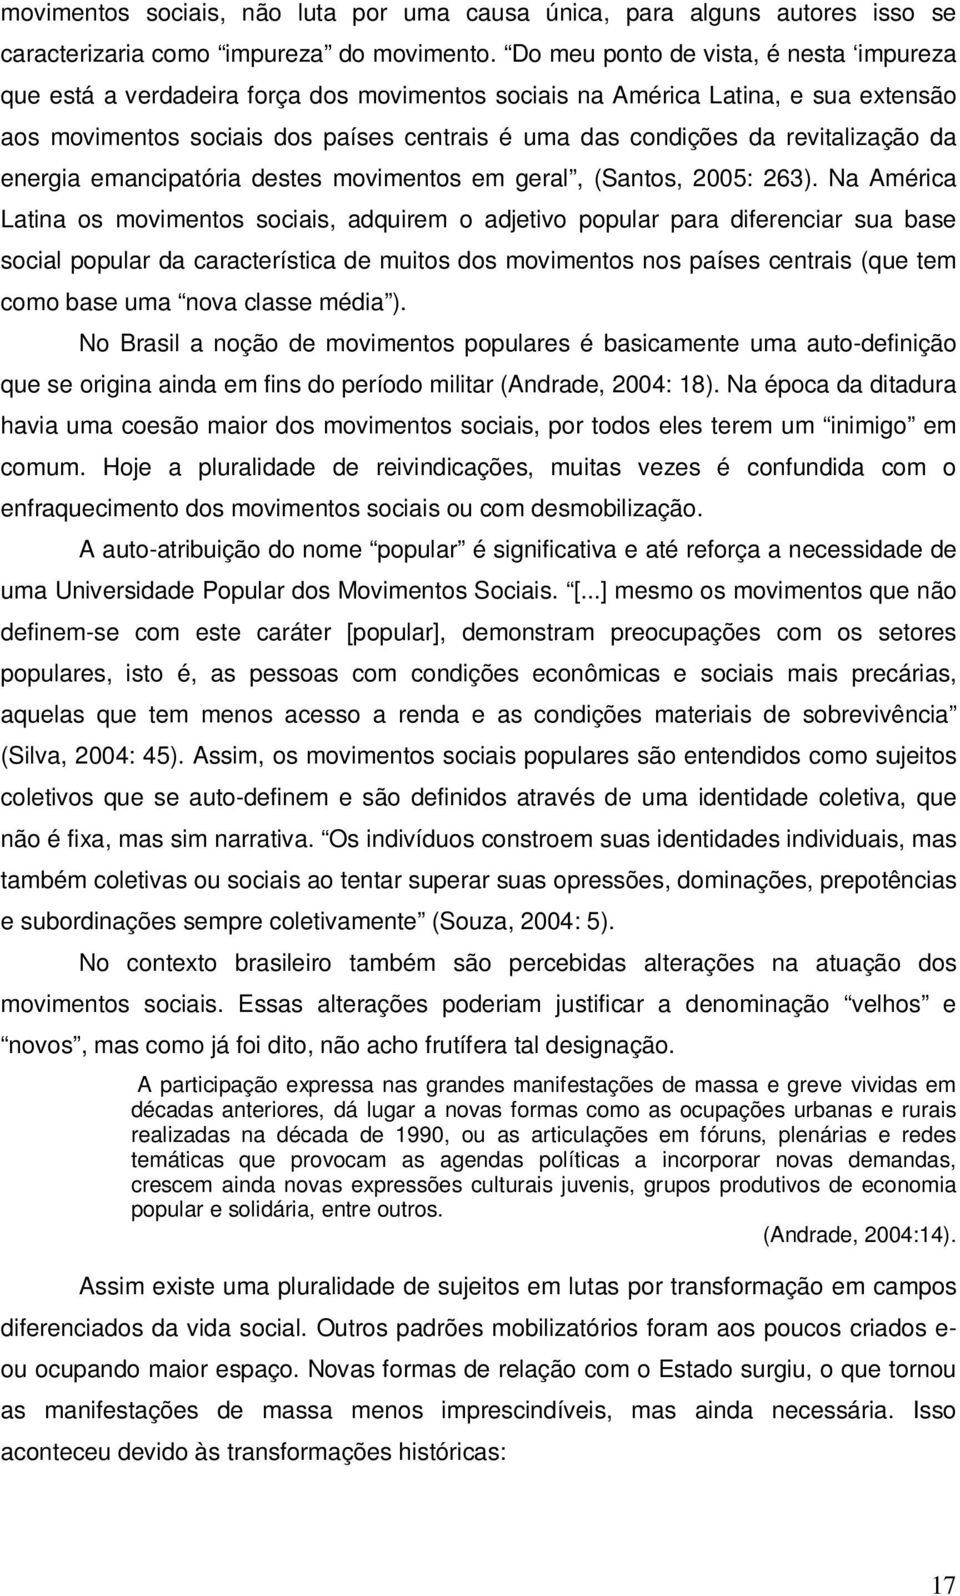 revitalização da energia emancipatória destes movimentos em geral, (Santos, 2005: 263).